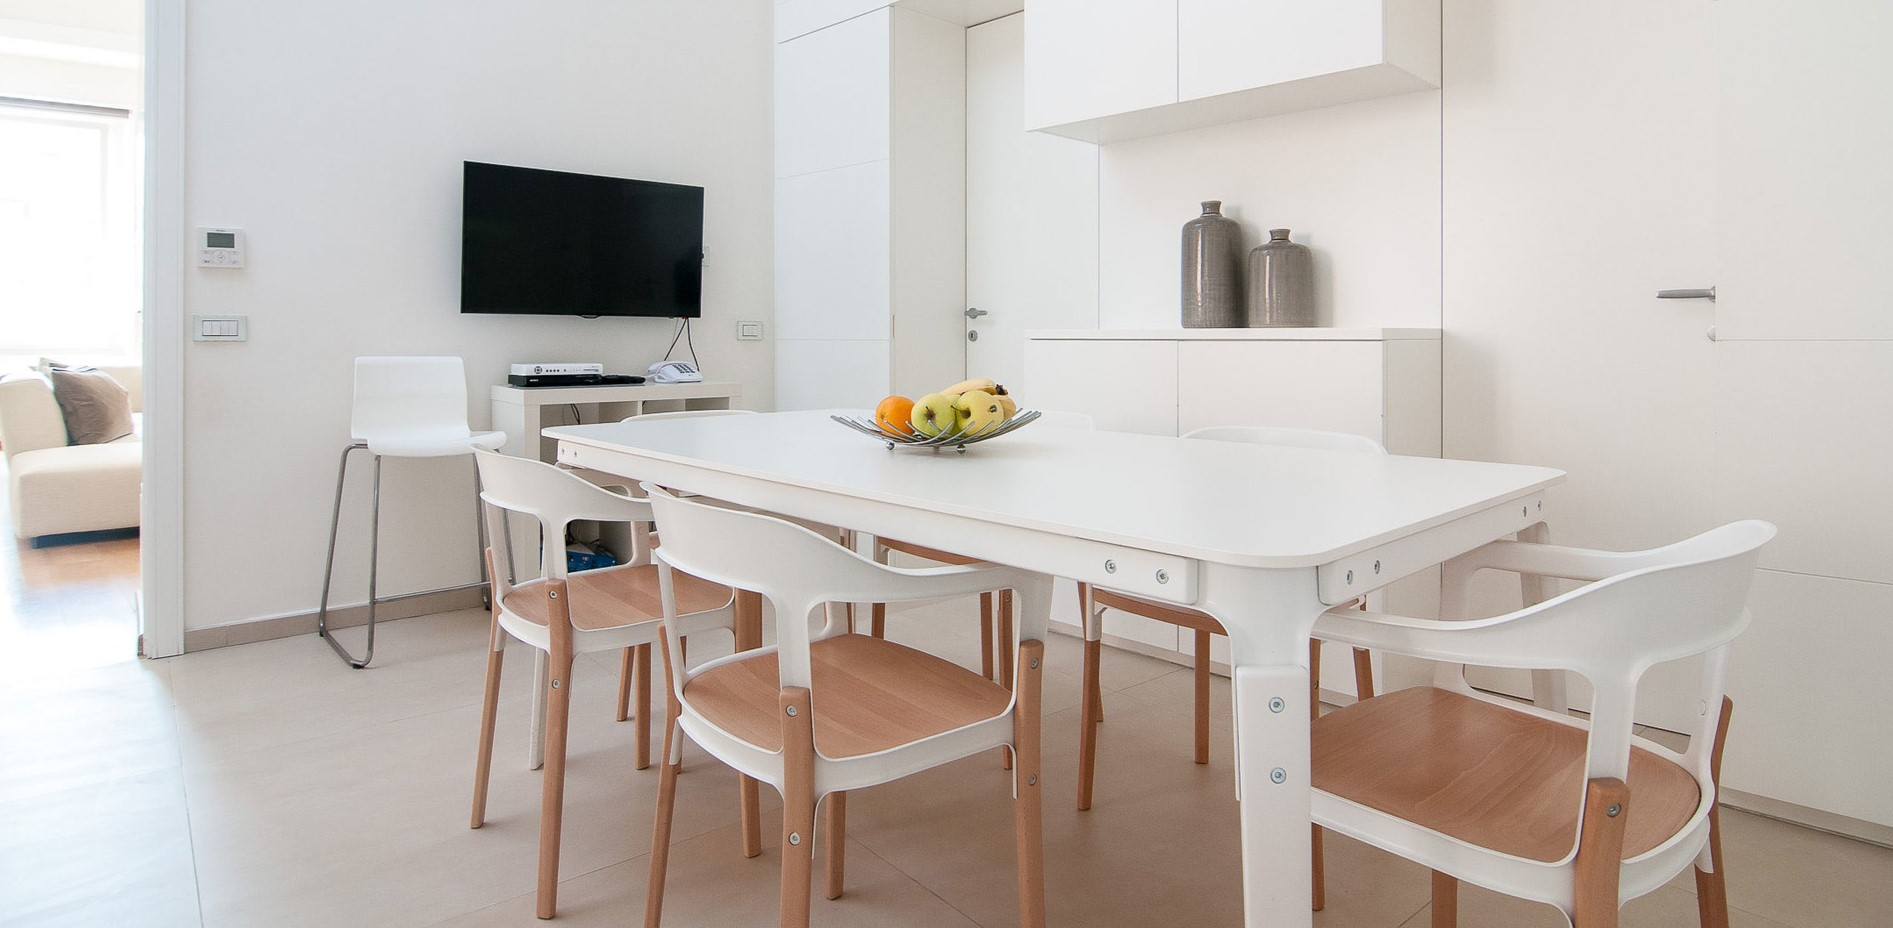 Белые стулья с деревянными вставками дополнят скандинавский интерьер кухни